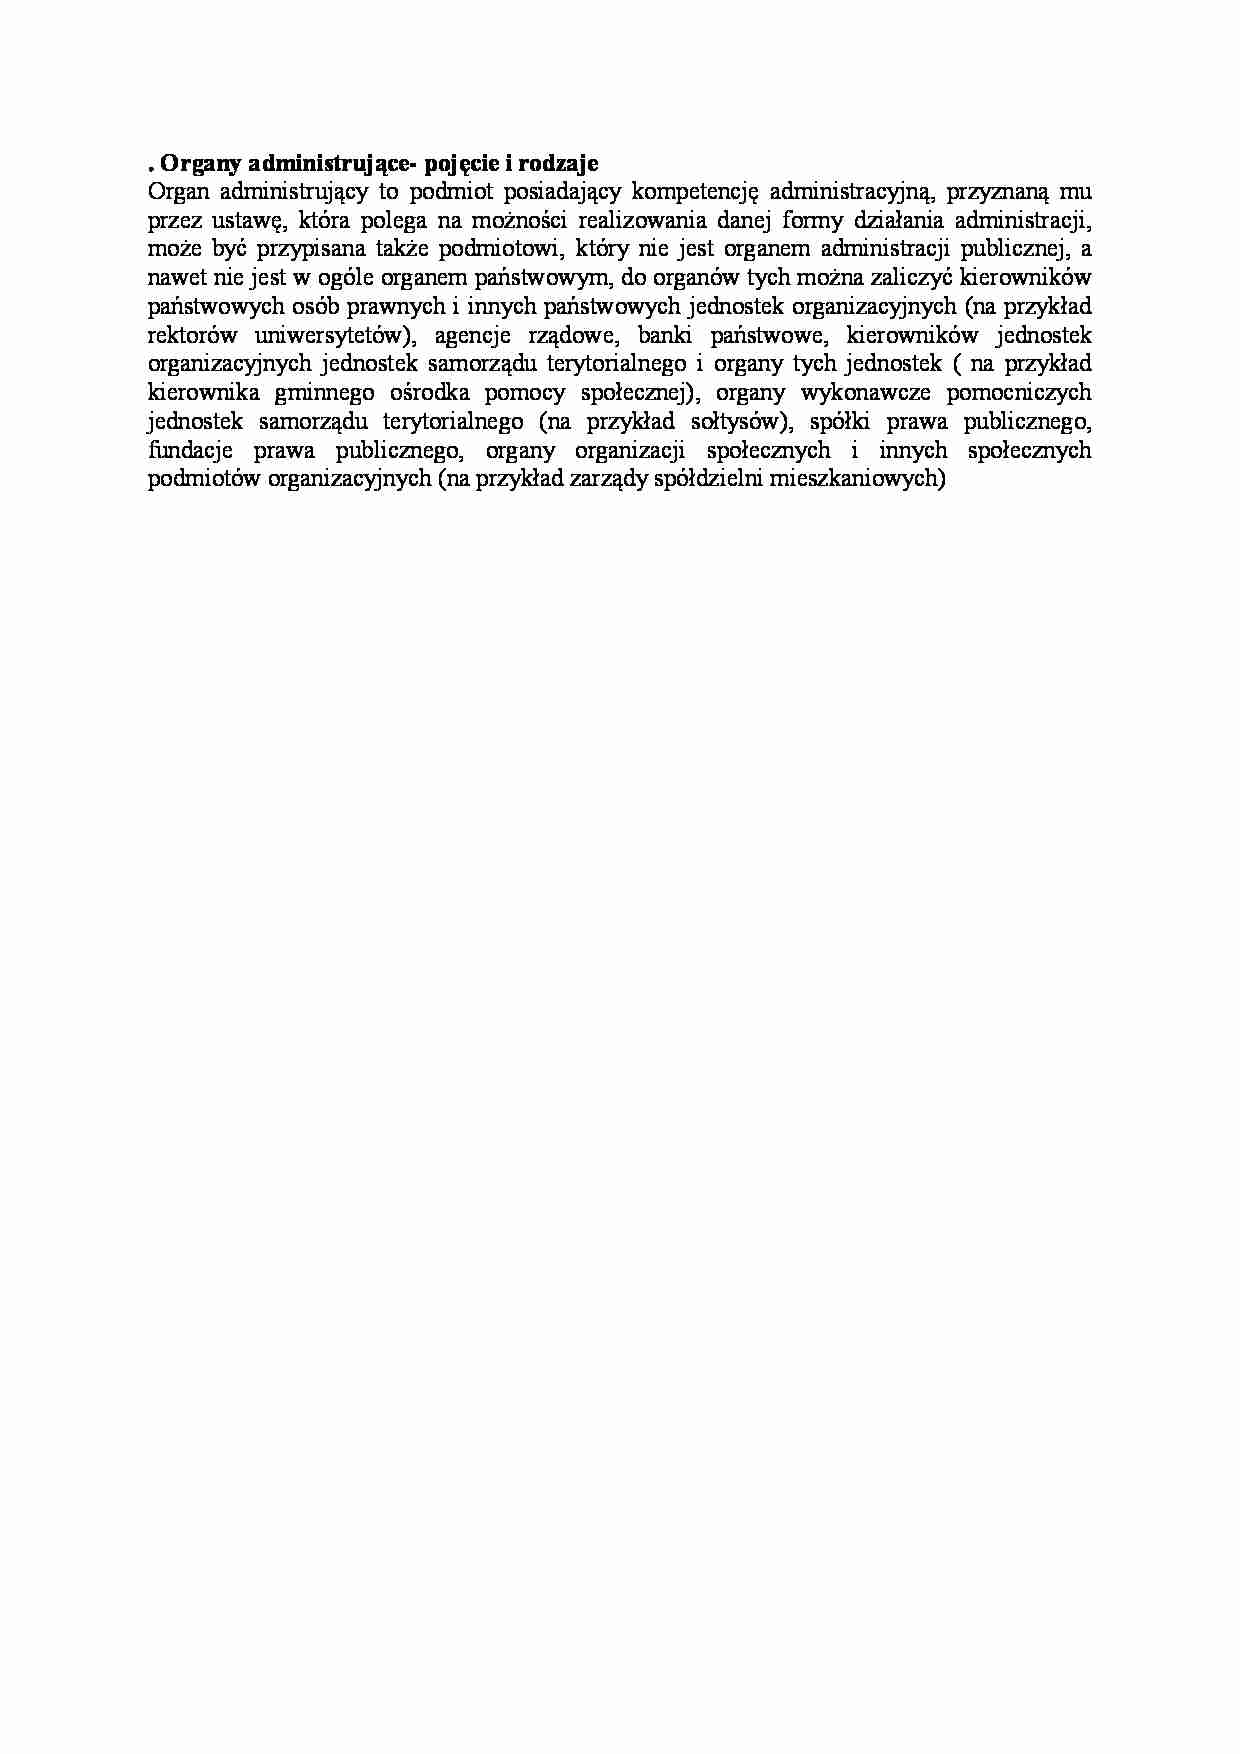 Organy administrujące - pojęcie i rodzaje - wykład - strona 1